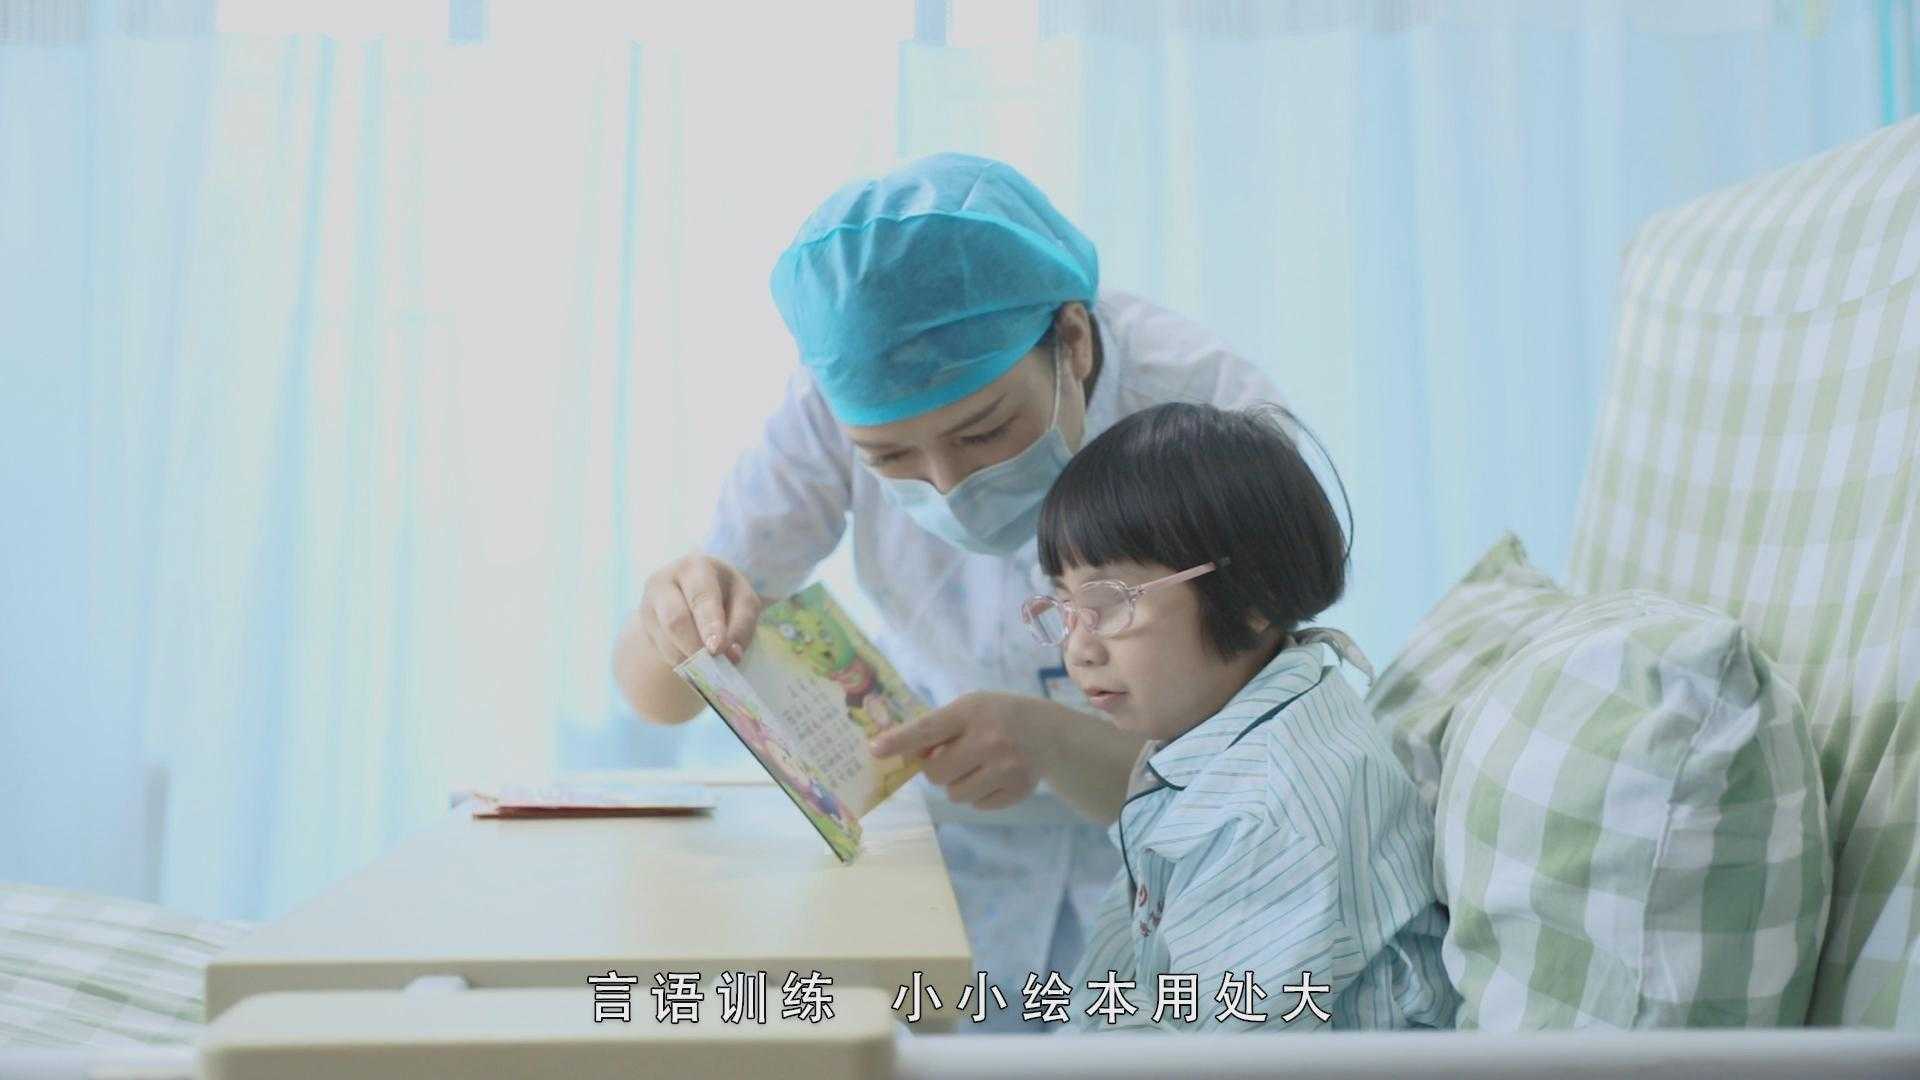 广东省工伤康复医院2021年5.12护士节短视频  医院宣传片